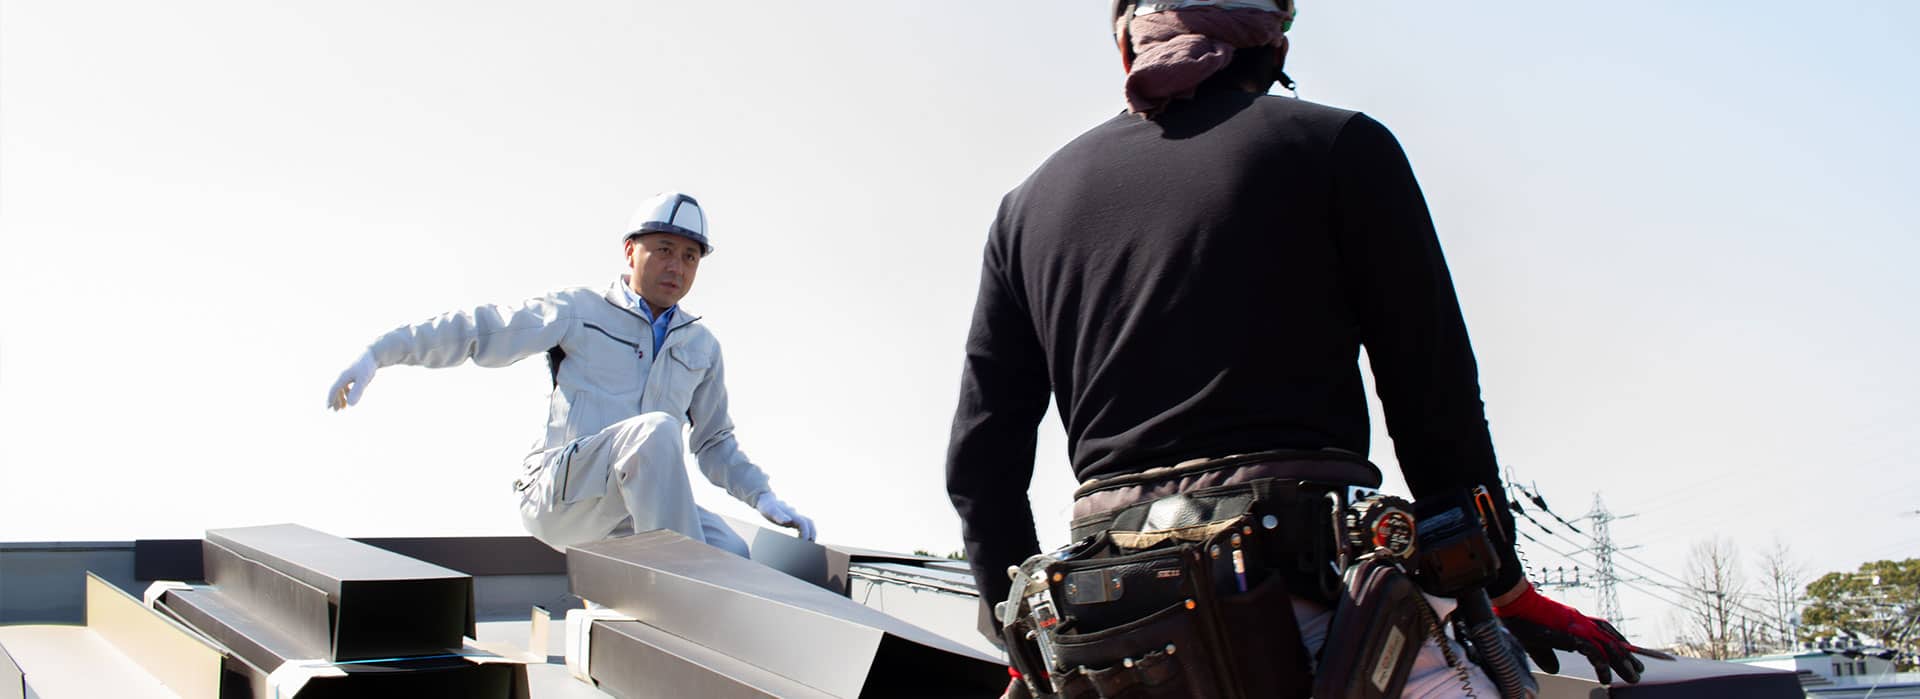 町田市の屋根修理・雨漏り修理の職人集団、山田工芸がお伝えしたいこと